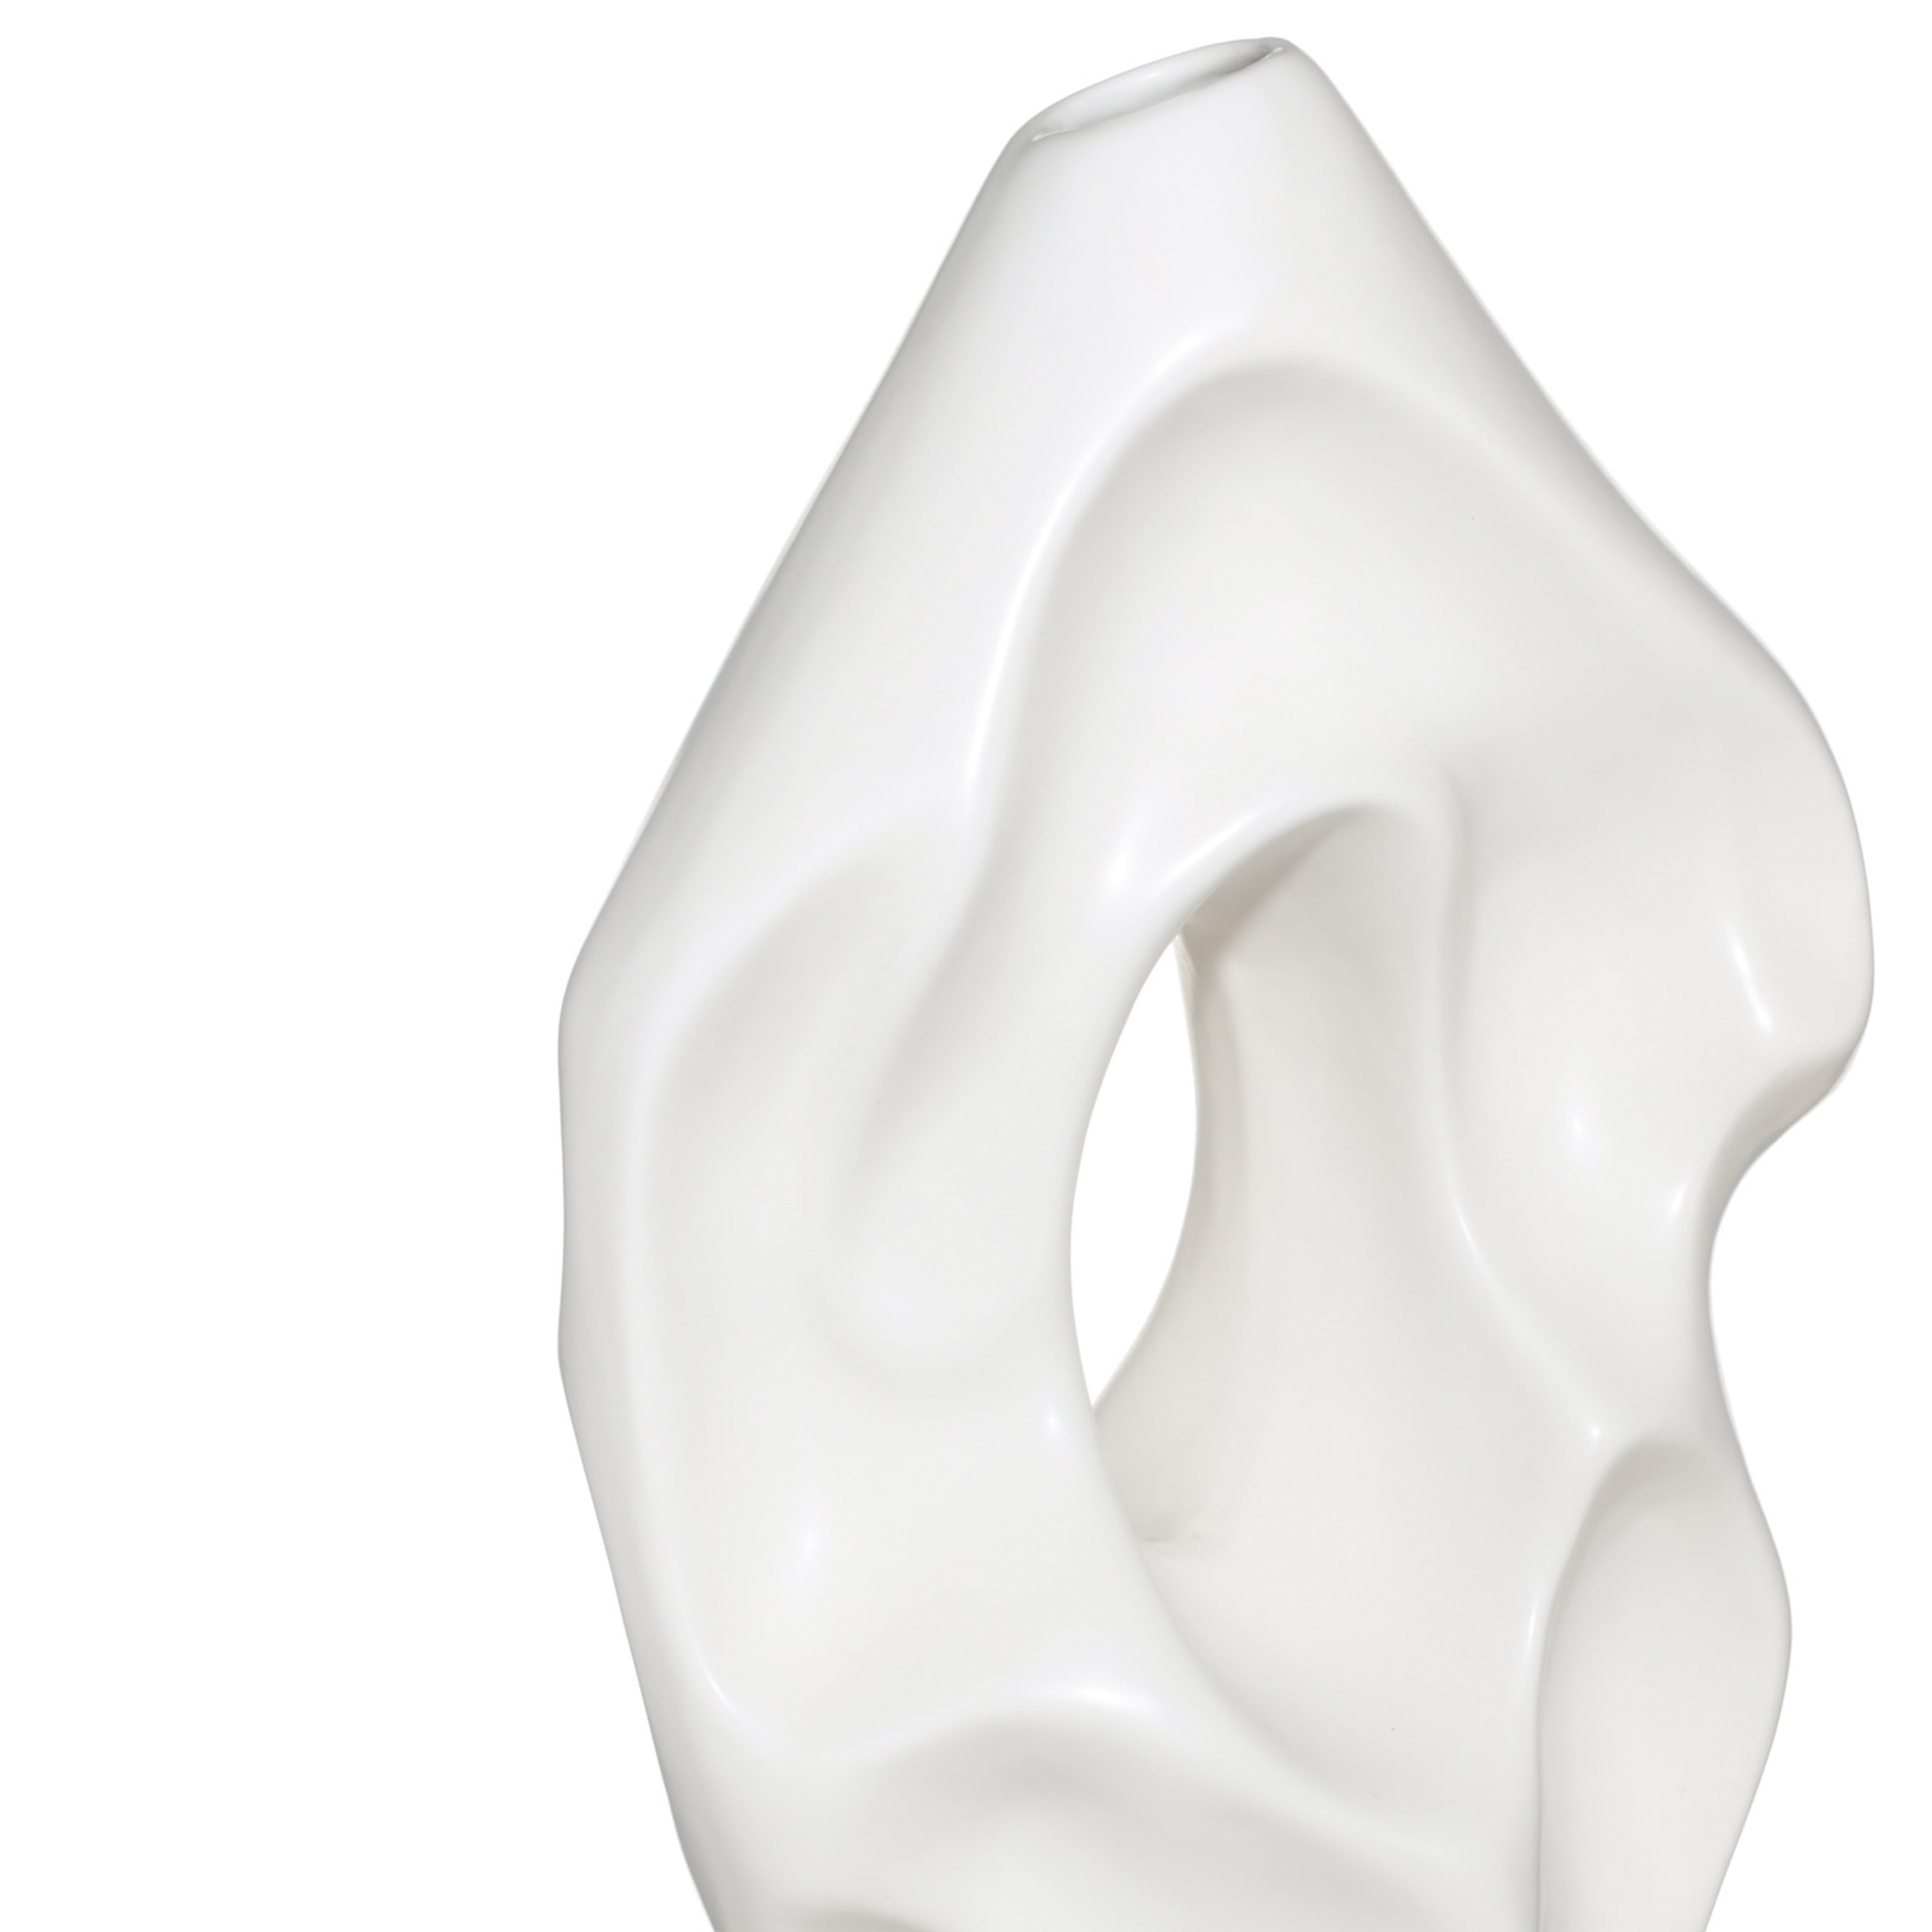 Flower vase, 37 cm, decorative, ceramic, white, Crumpled effect, Crumple изображение № 3